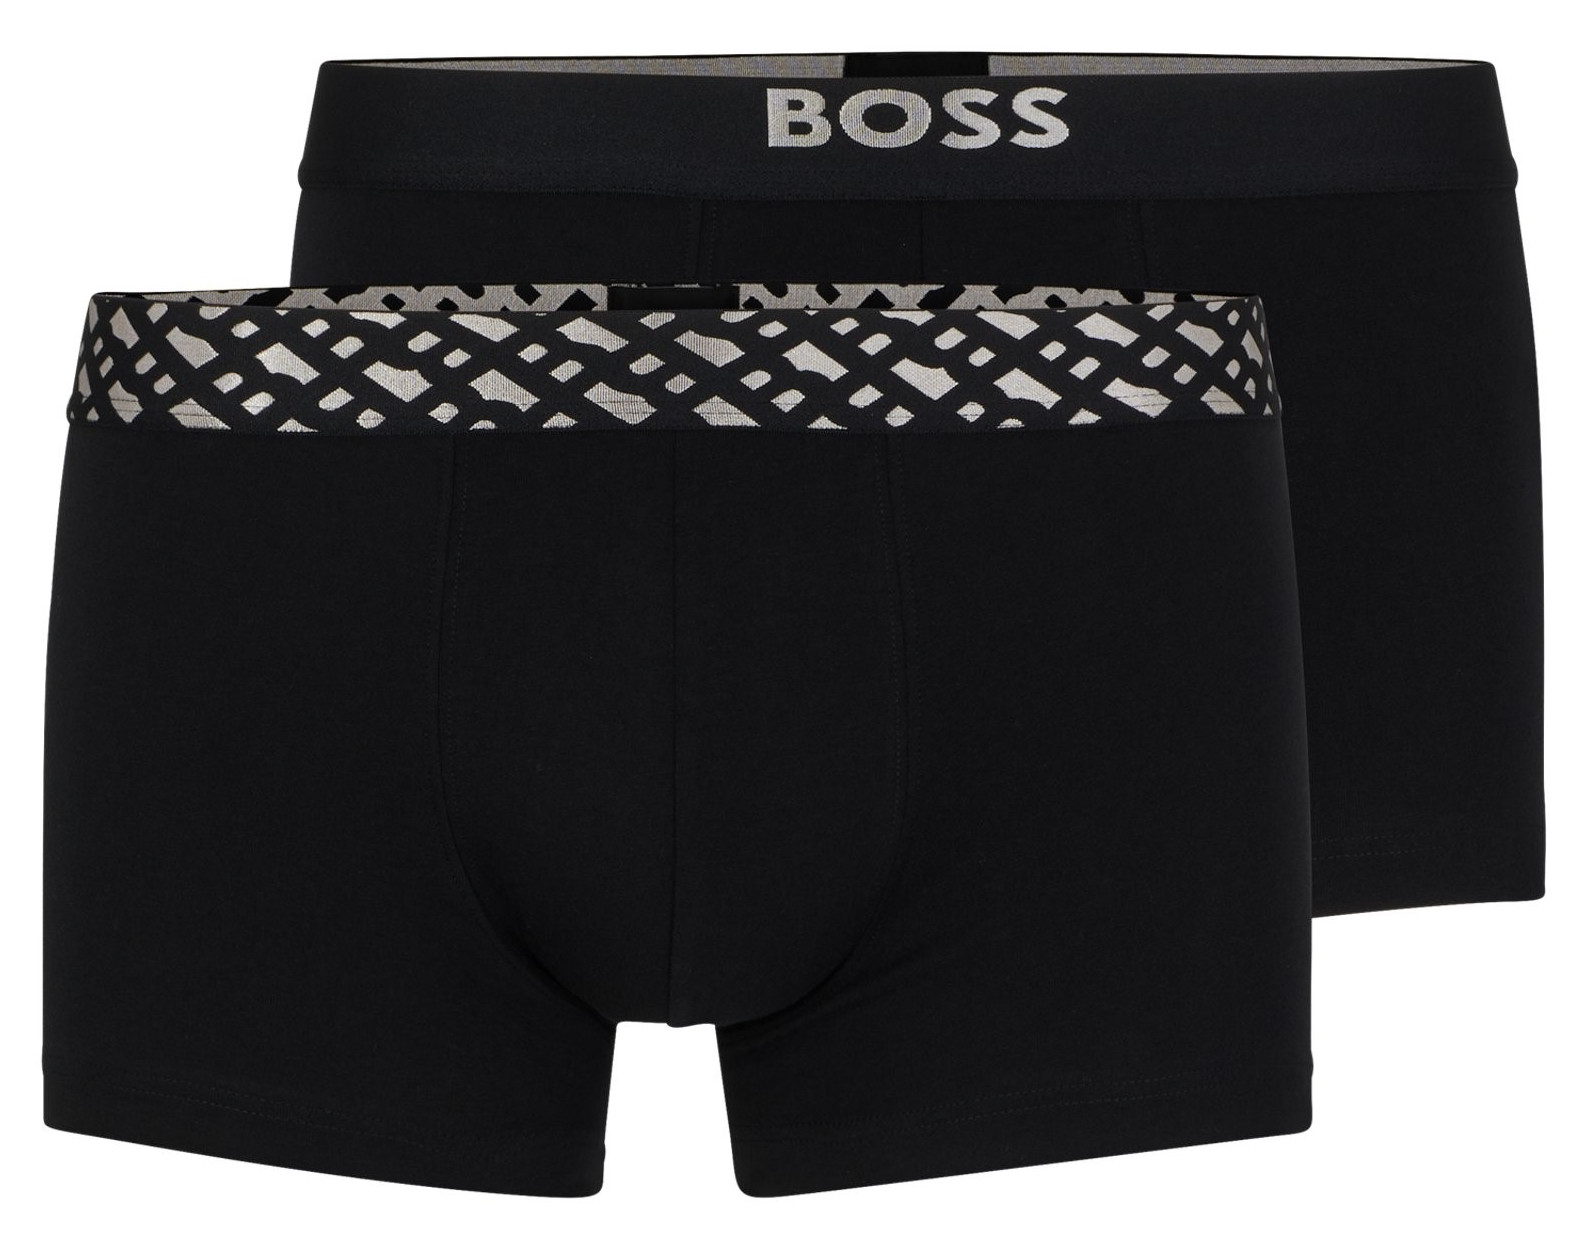 Hugo Boss 2 PACK - pánske boxerky BOSS 50499823-001 XXL